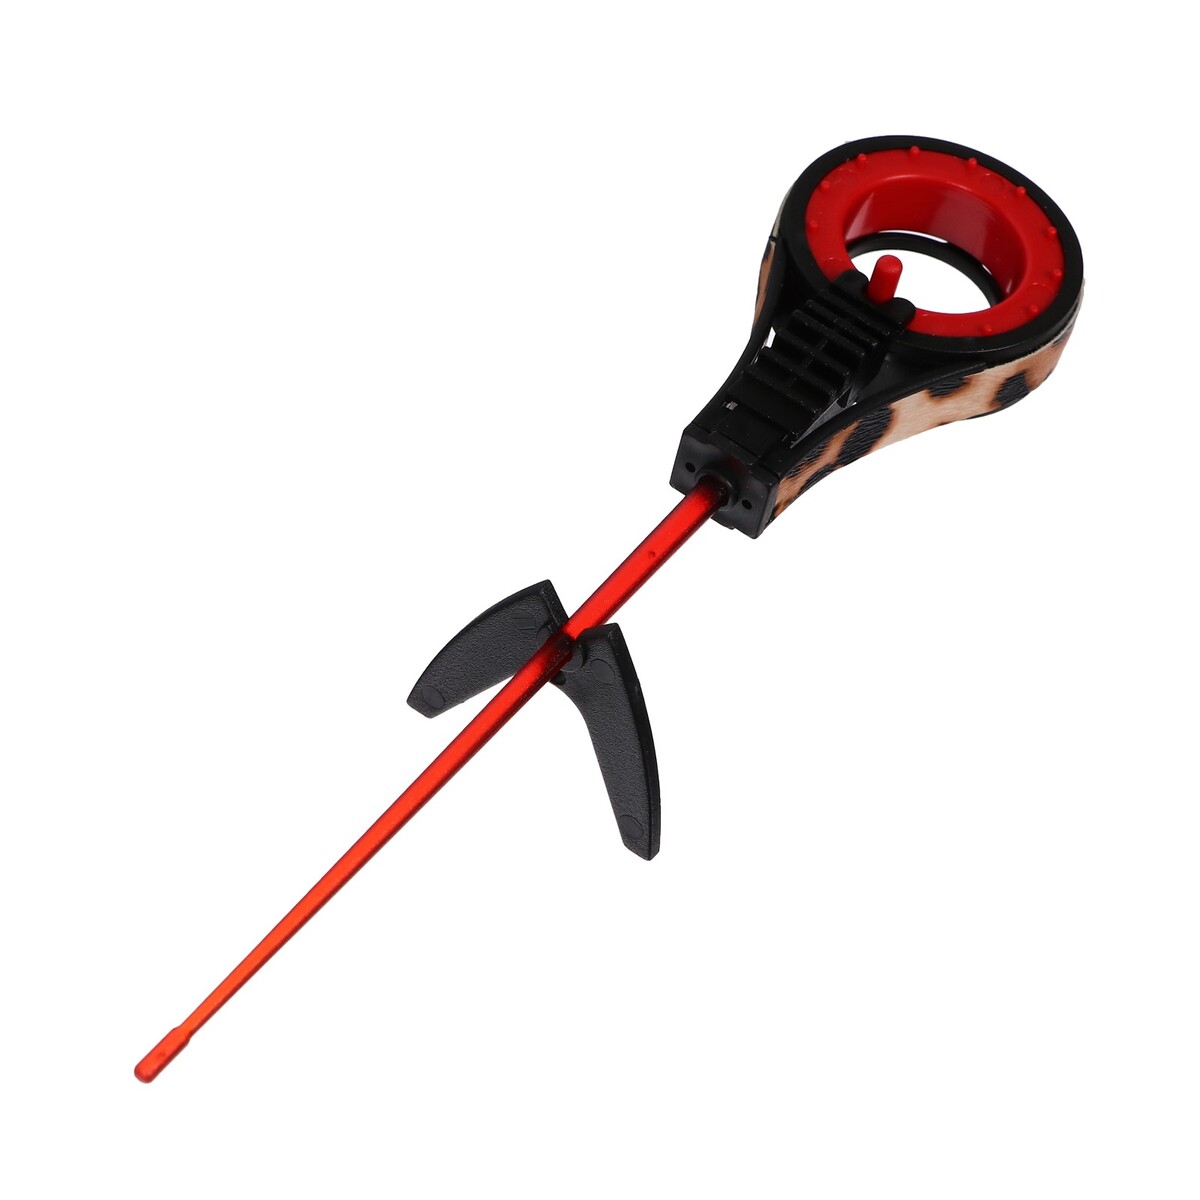 Удочка зимняя балалайка со сторожком, цвет черный красный, hfb-37 удочка зимняя ручка неопрен длина 42 см красный hbf 34 1